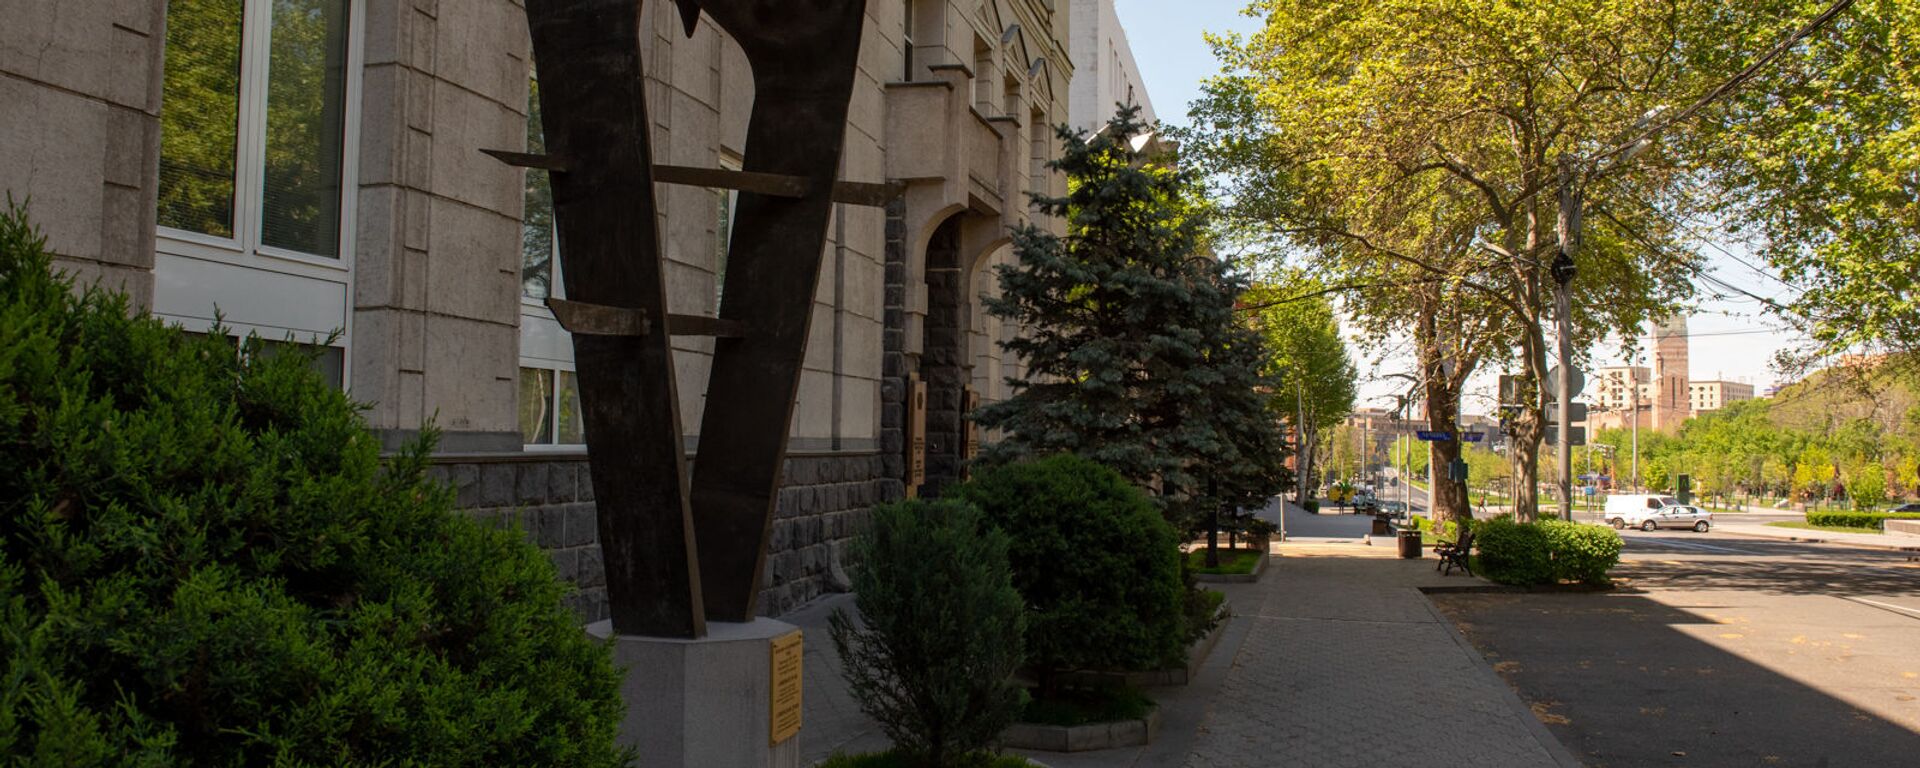 Скульптура армянскому драму перед зданием Центрального Банка Армении - Sputnik Армения, 1920, 15.06.2021